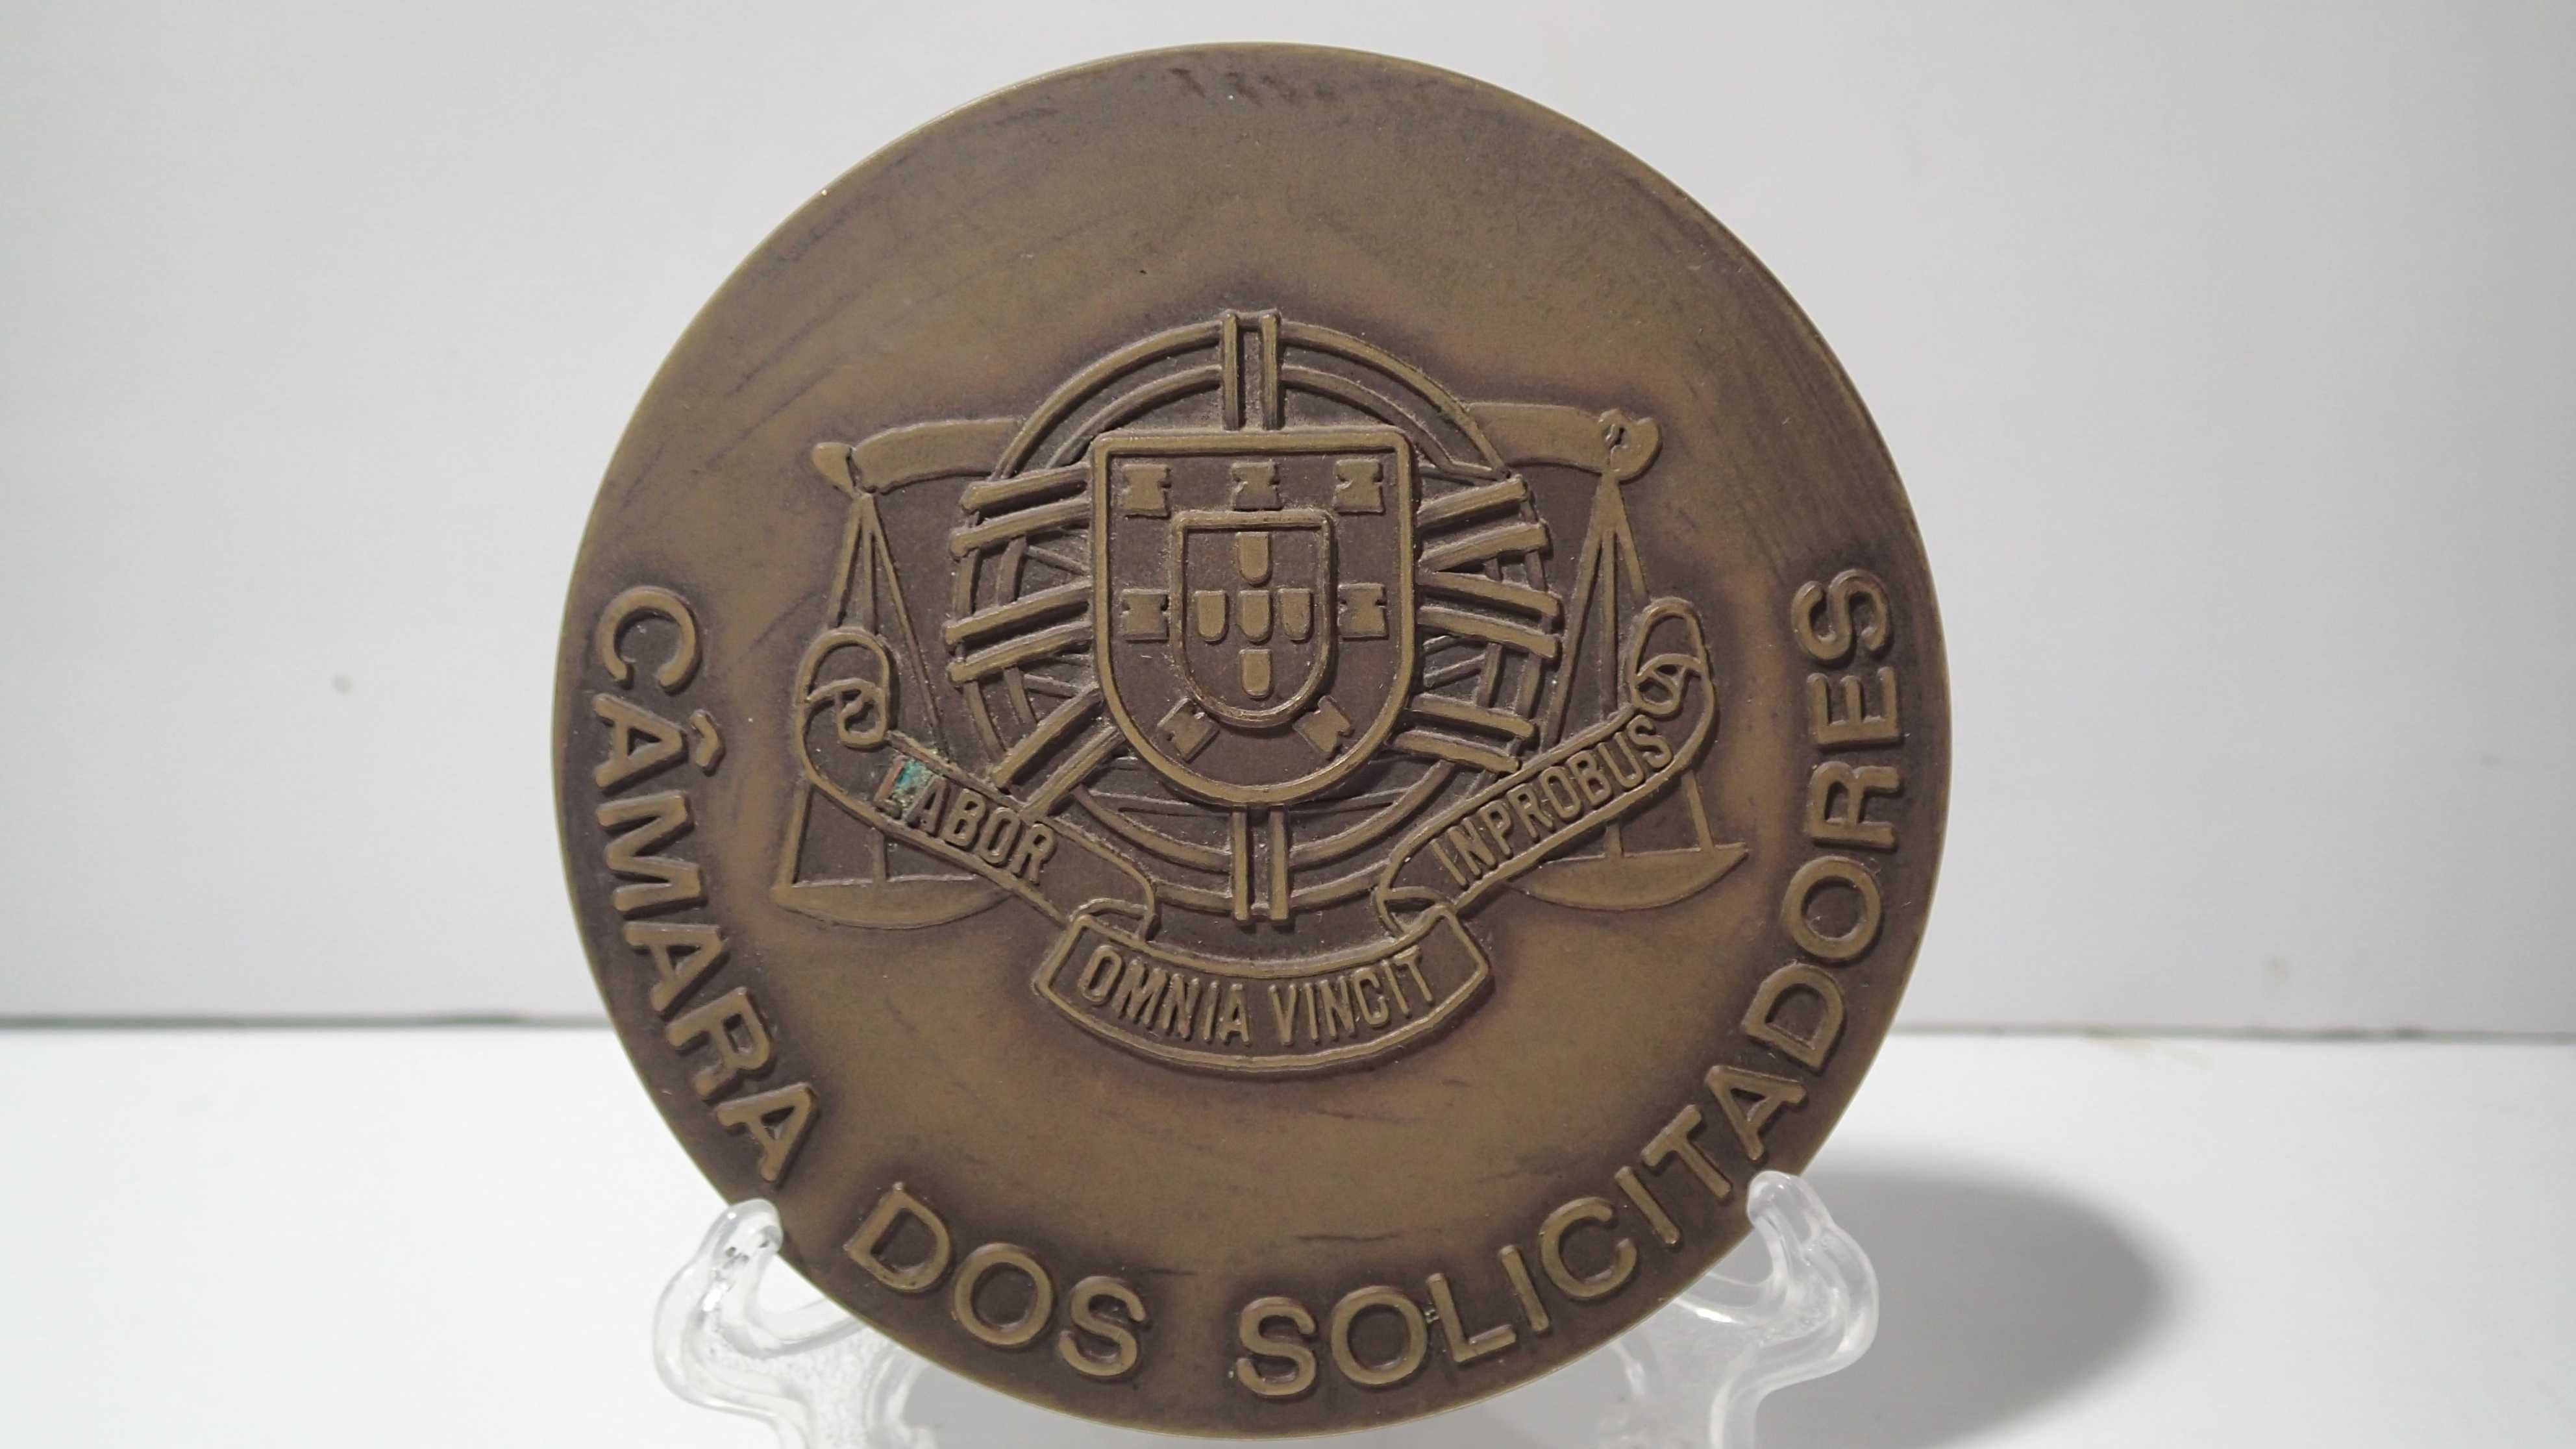 Medalha de bronze da Câmara dos Solicitadores